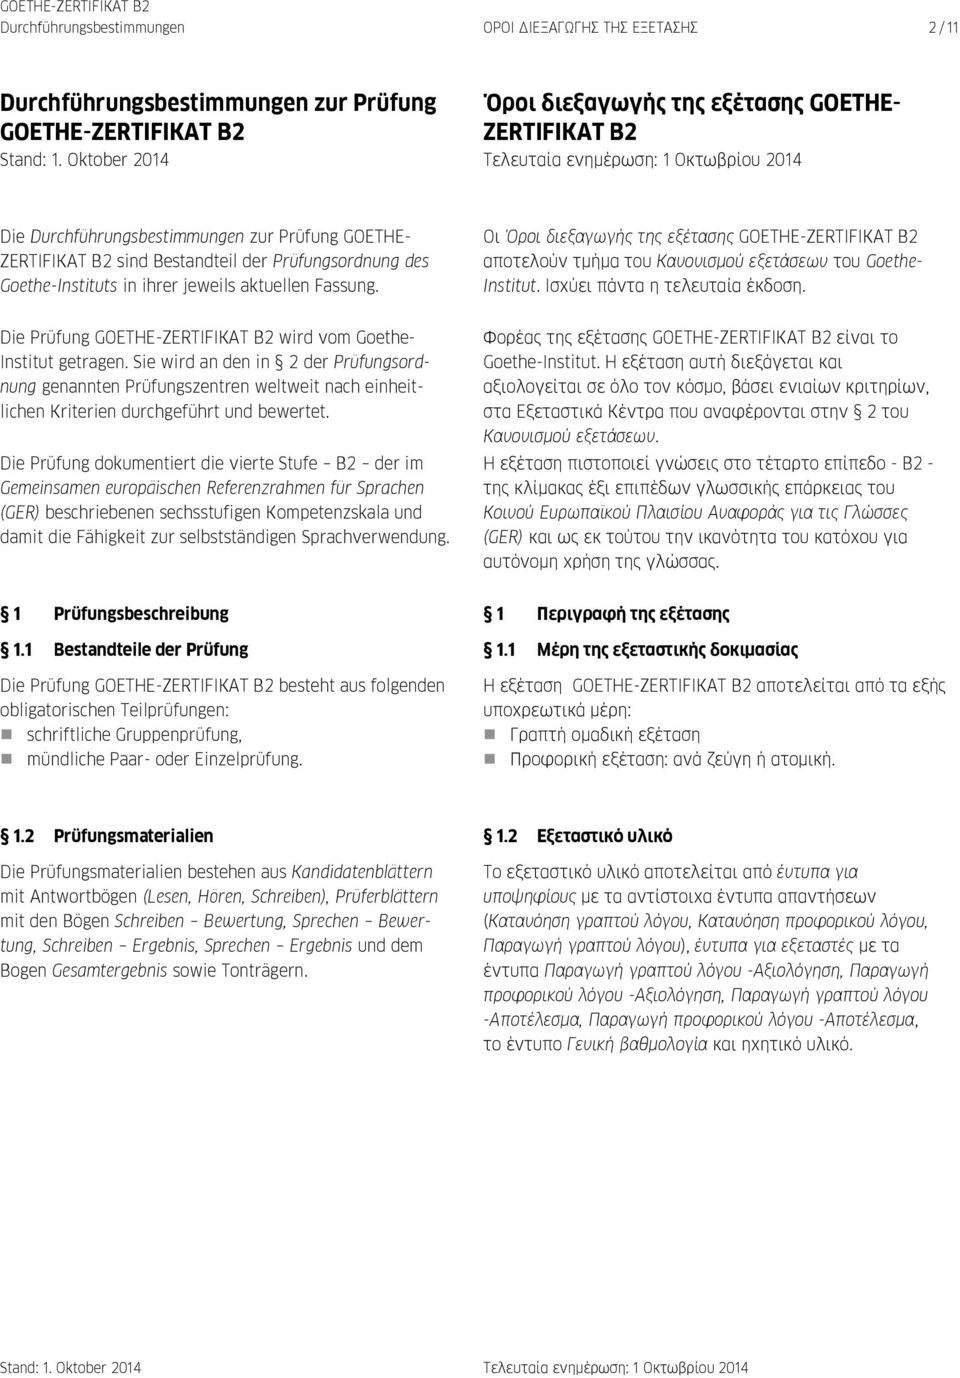 Prüfungsordnung des Goethe-Instituts in ihrer jeweils aktuellen Fassung. Οι Όροι διεξαγωγής της εξέτασης GOETHE-ZERTIFIKAT Β2 αποτελούν τμήμα του Κανονισμού εξετάσεων του Goethe- Institut.